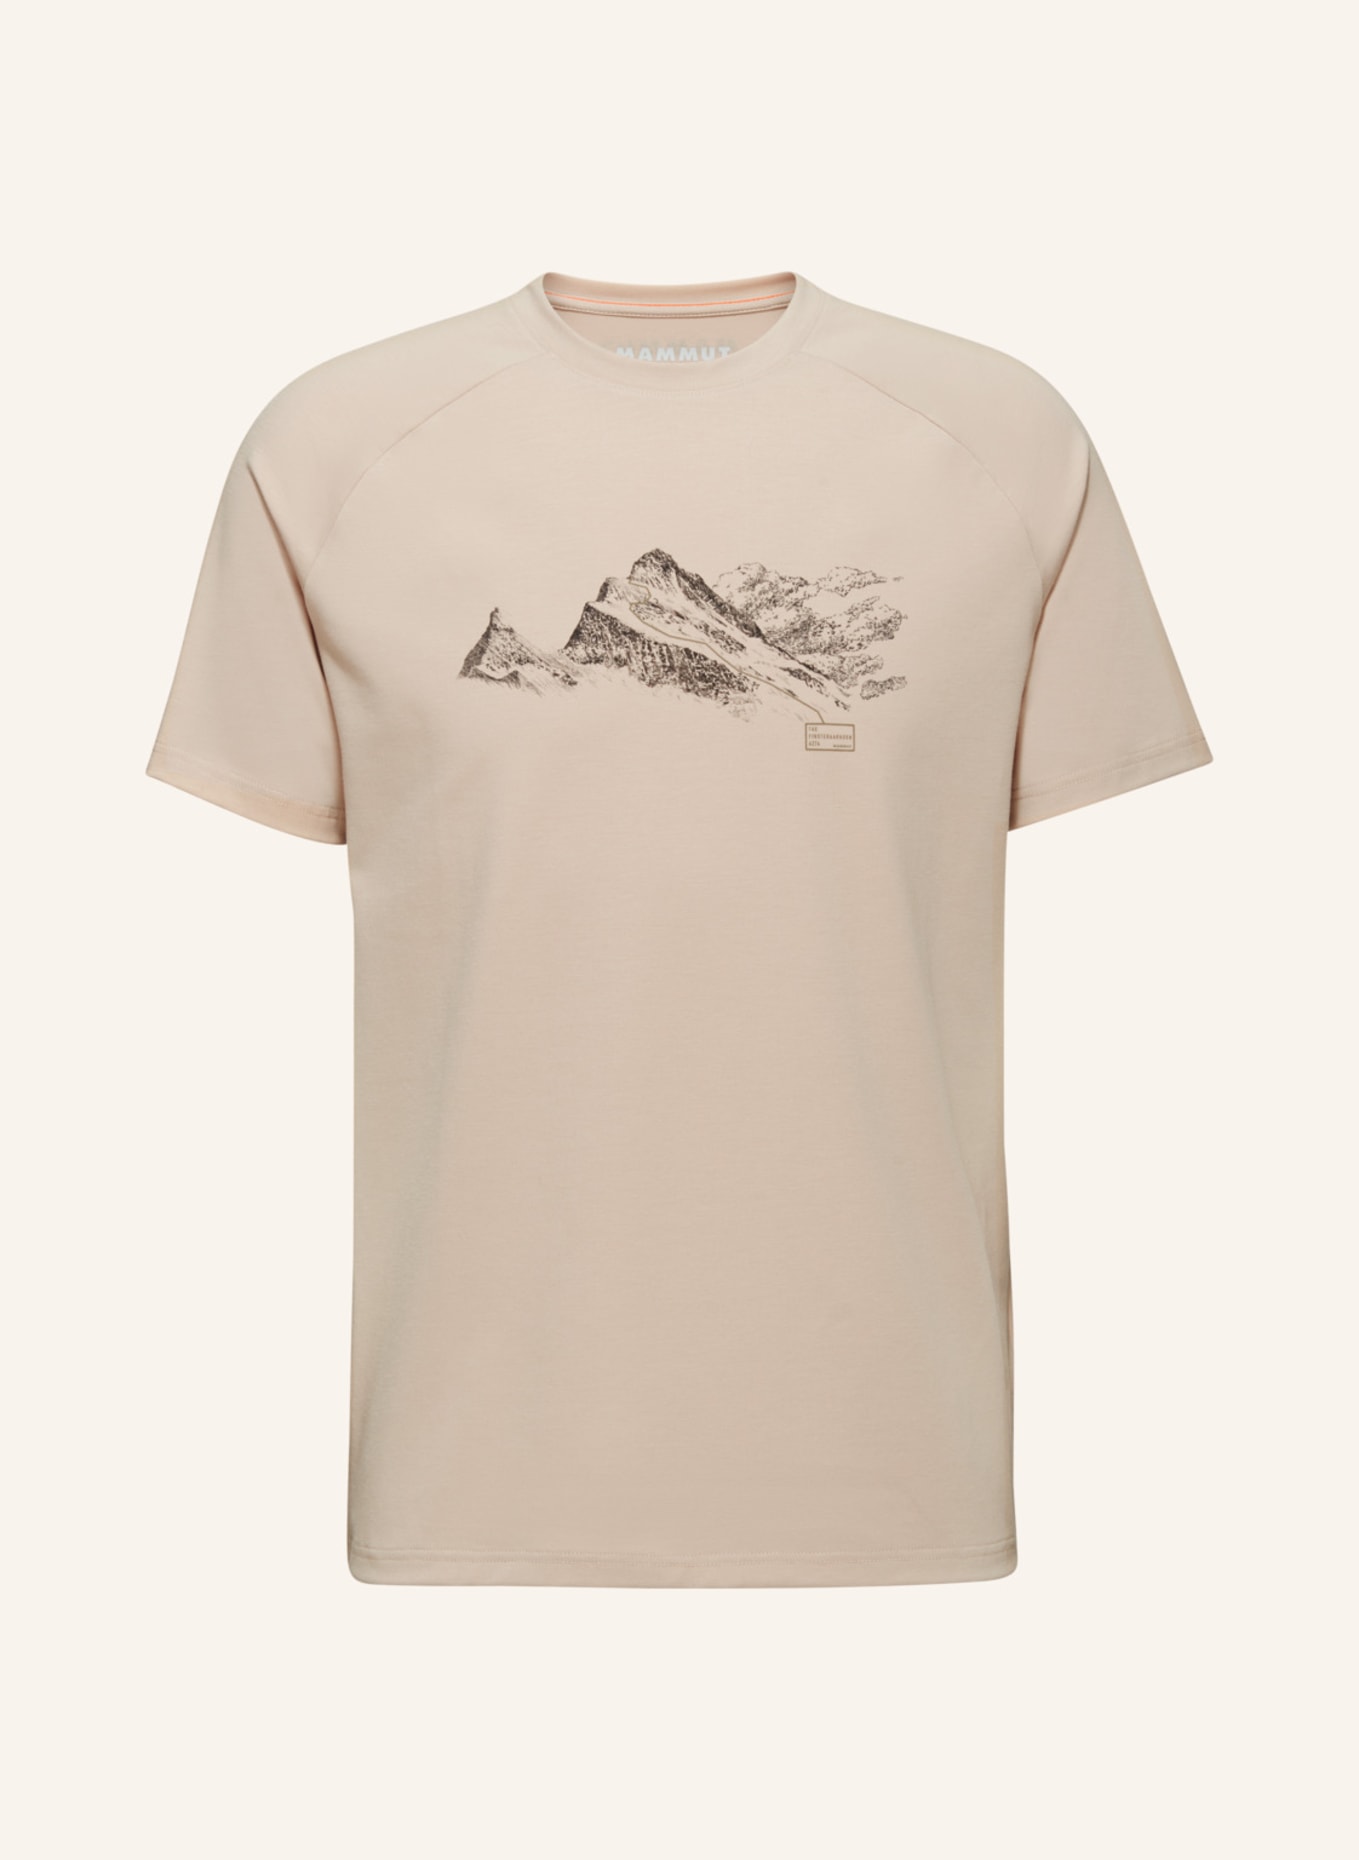 MAMMUT Mammut Mountain T-Shirt Men Finsteraarhorn, Farbe: BEIGE/ BRAUN/ CAMEL (Bild 1)